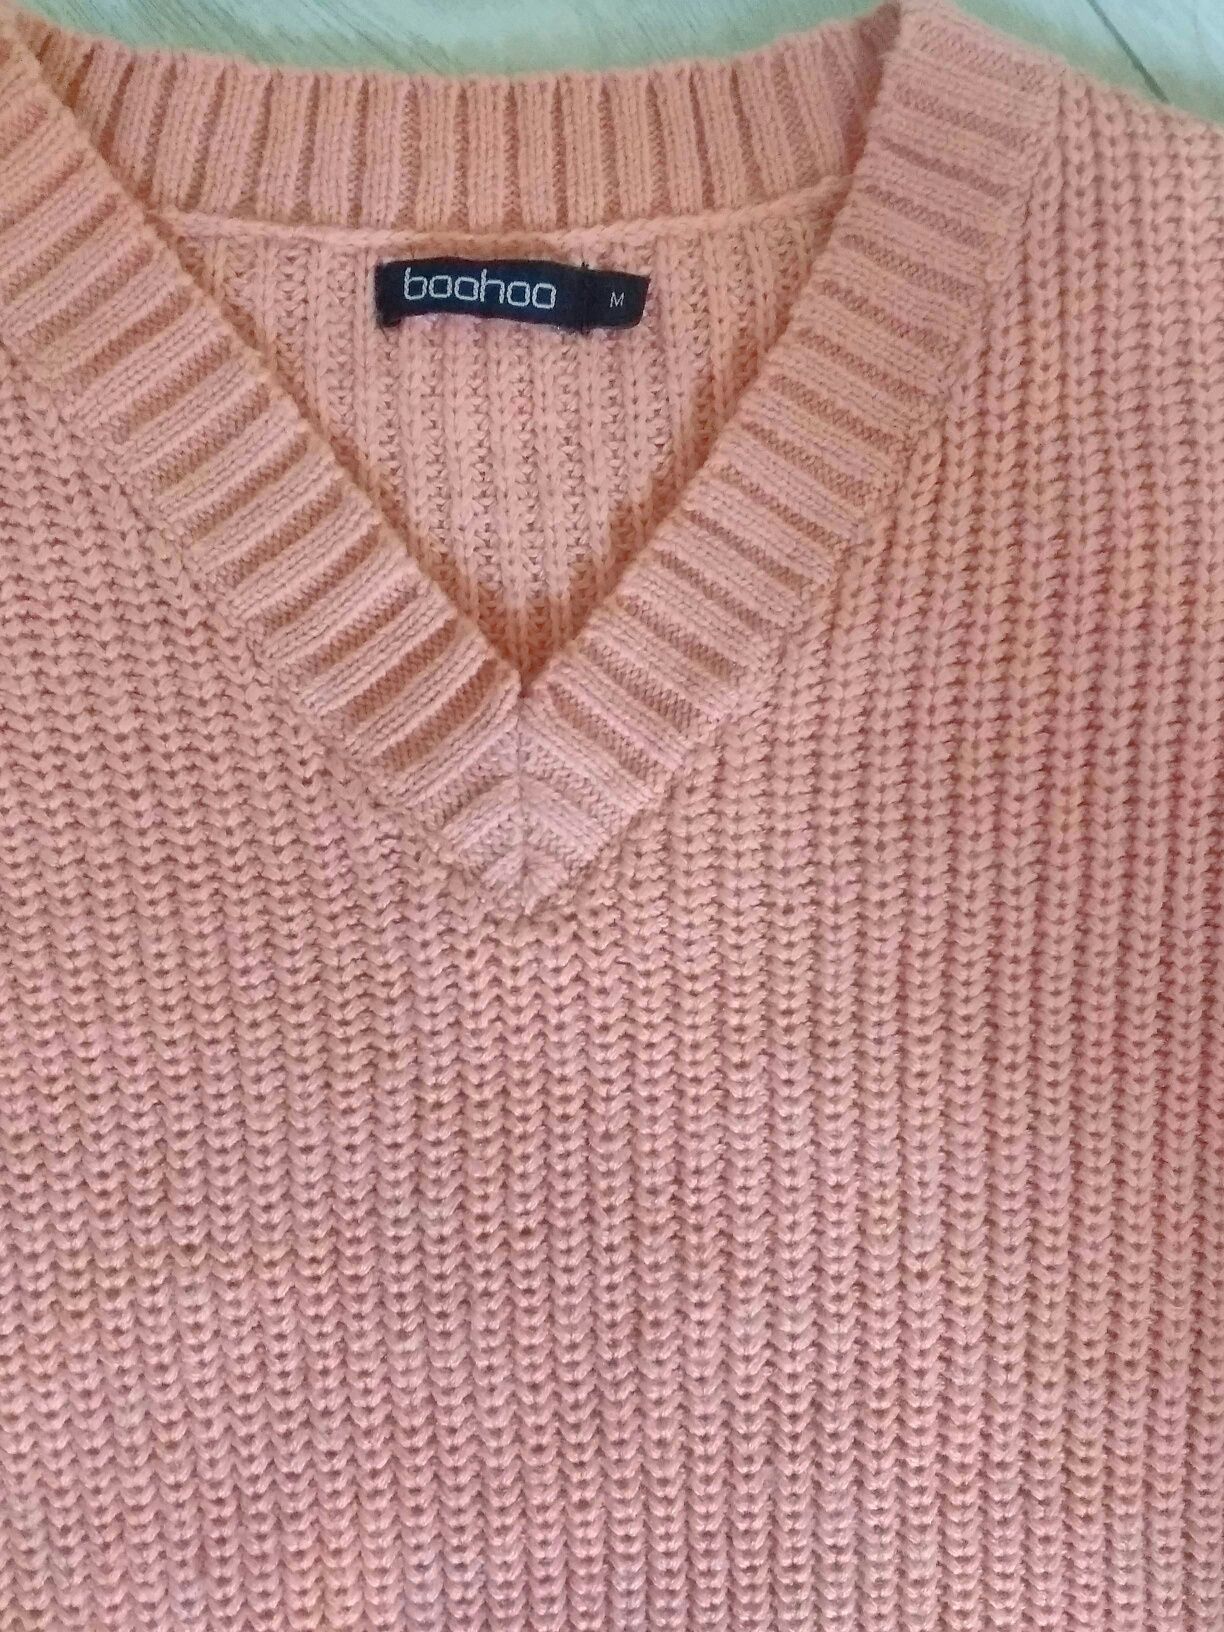 Джемпер, пуловер, свитер